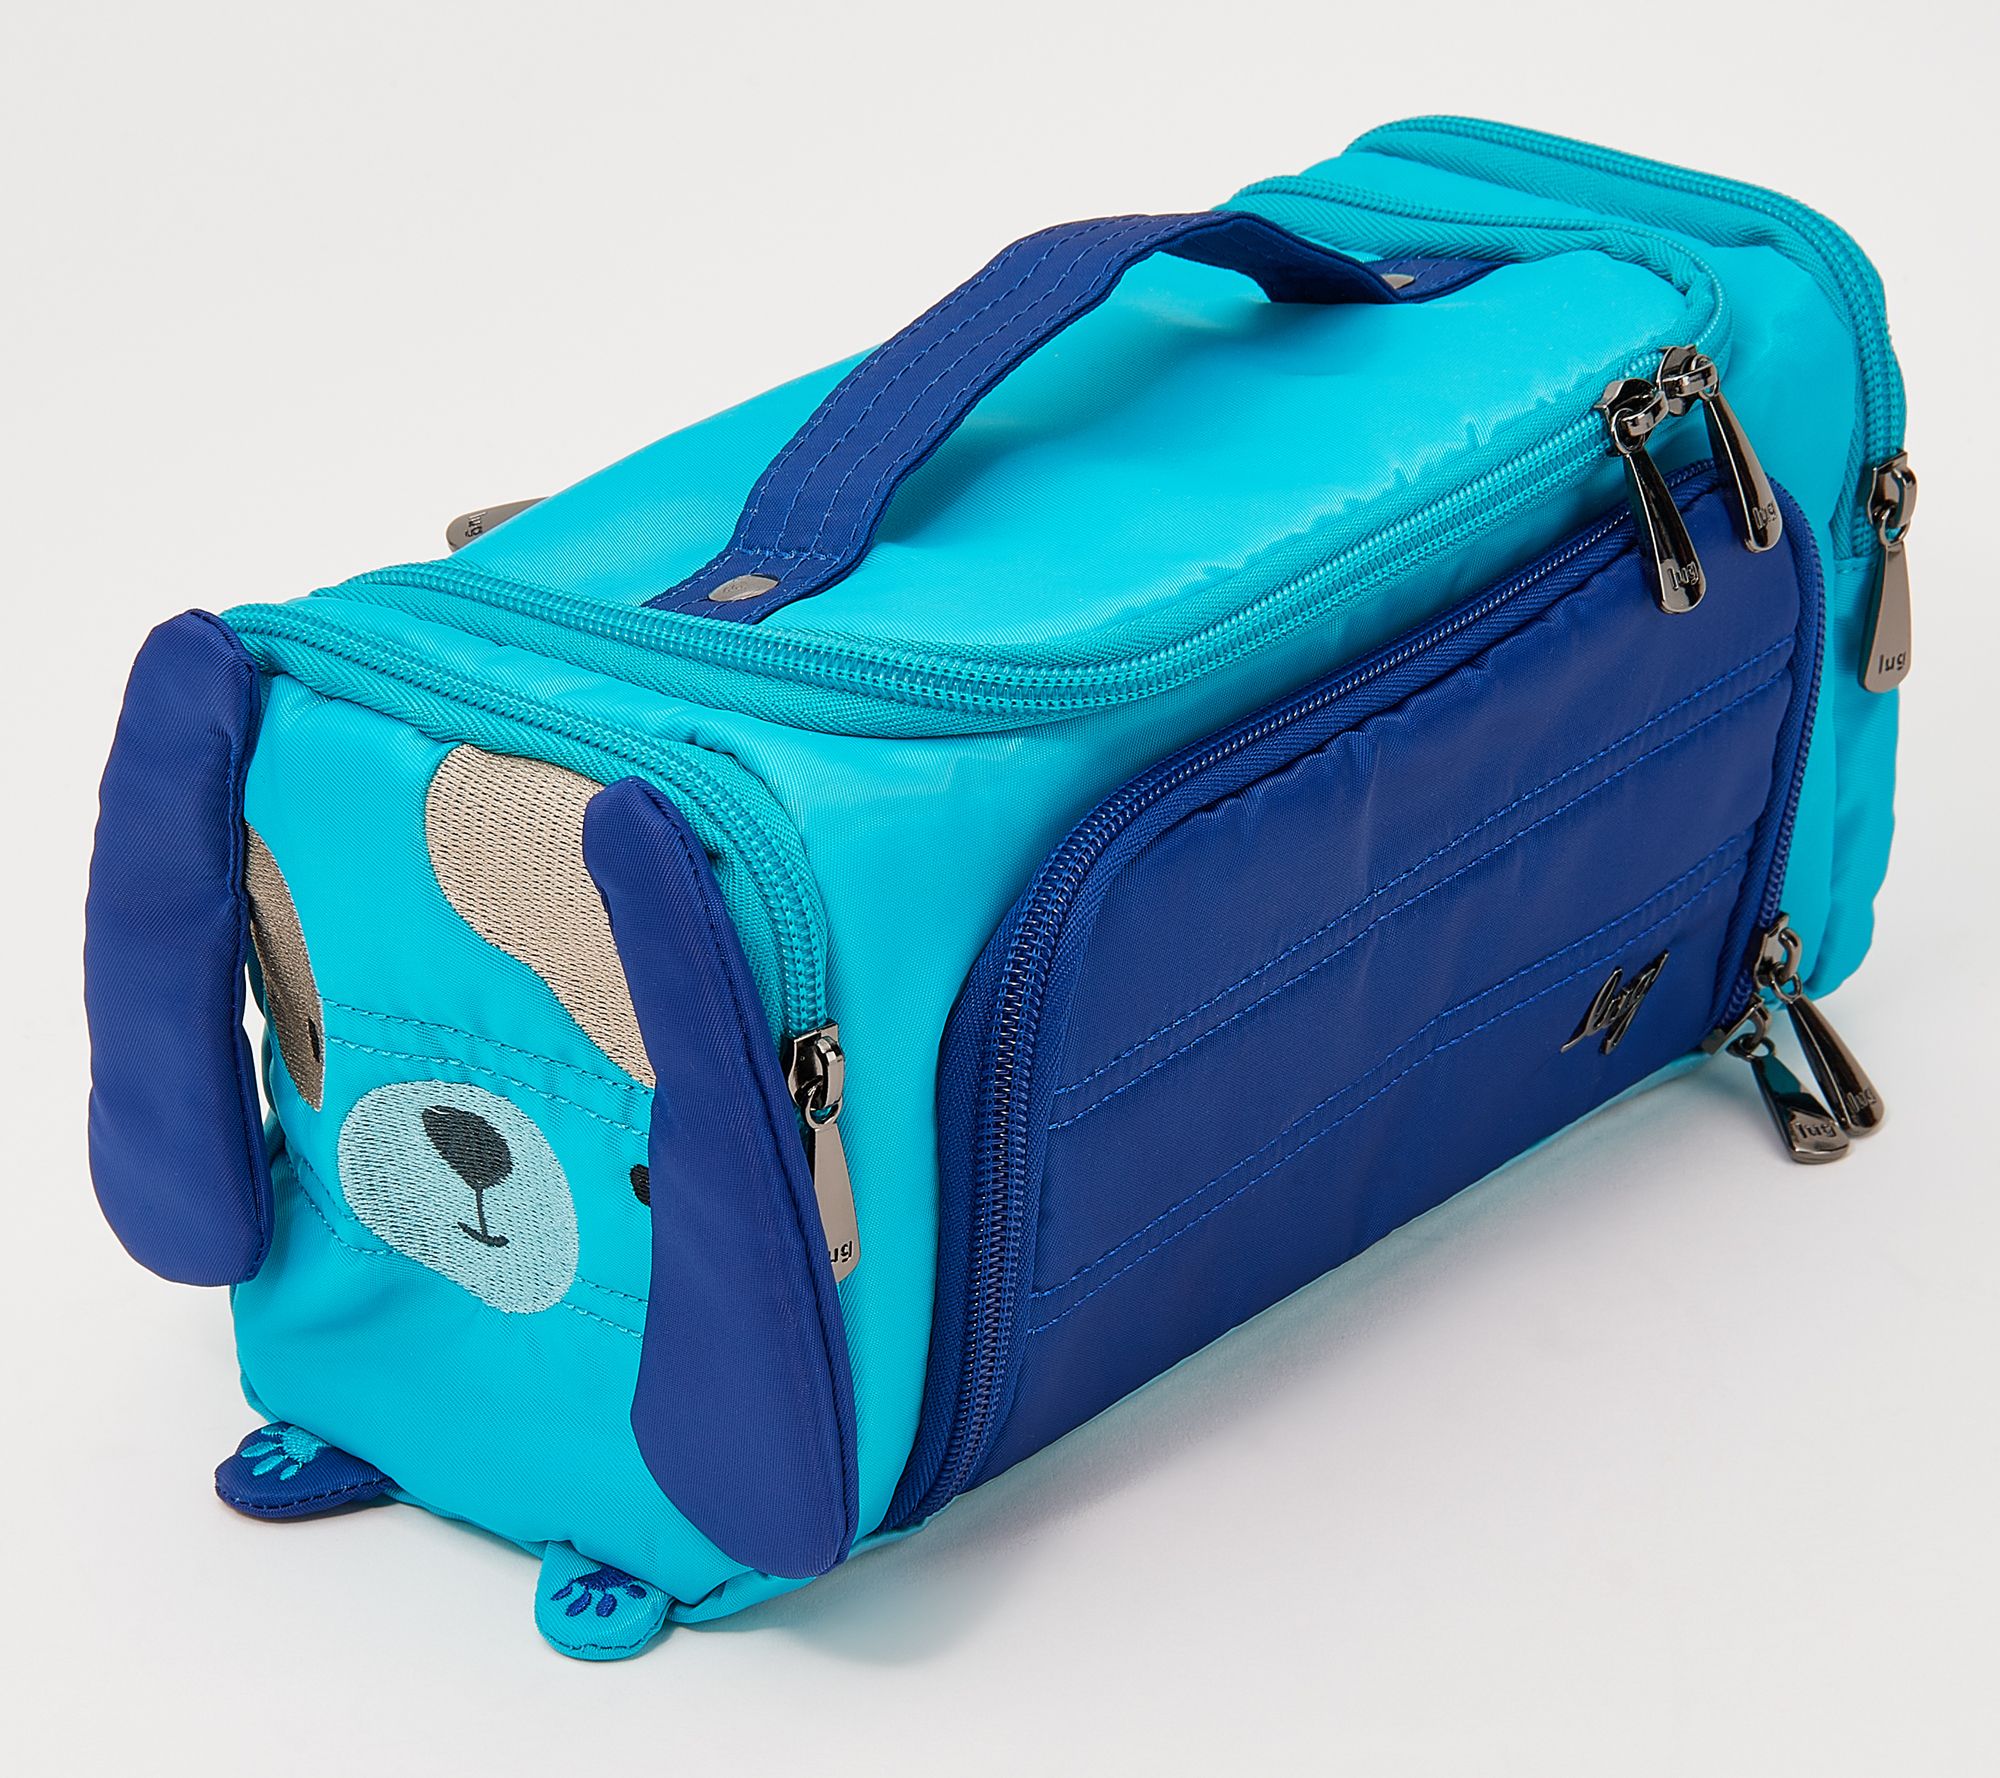 Lug Trolley XL Cosmetic Case - Heather Indigo - Just Bags Luggage